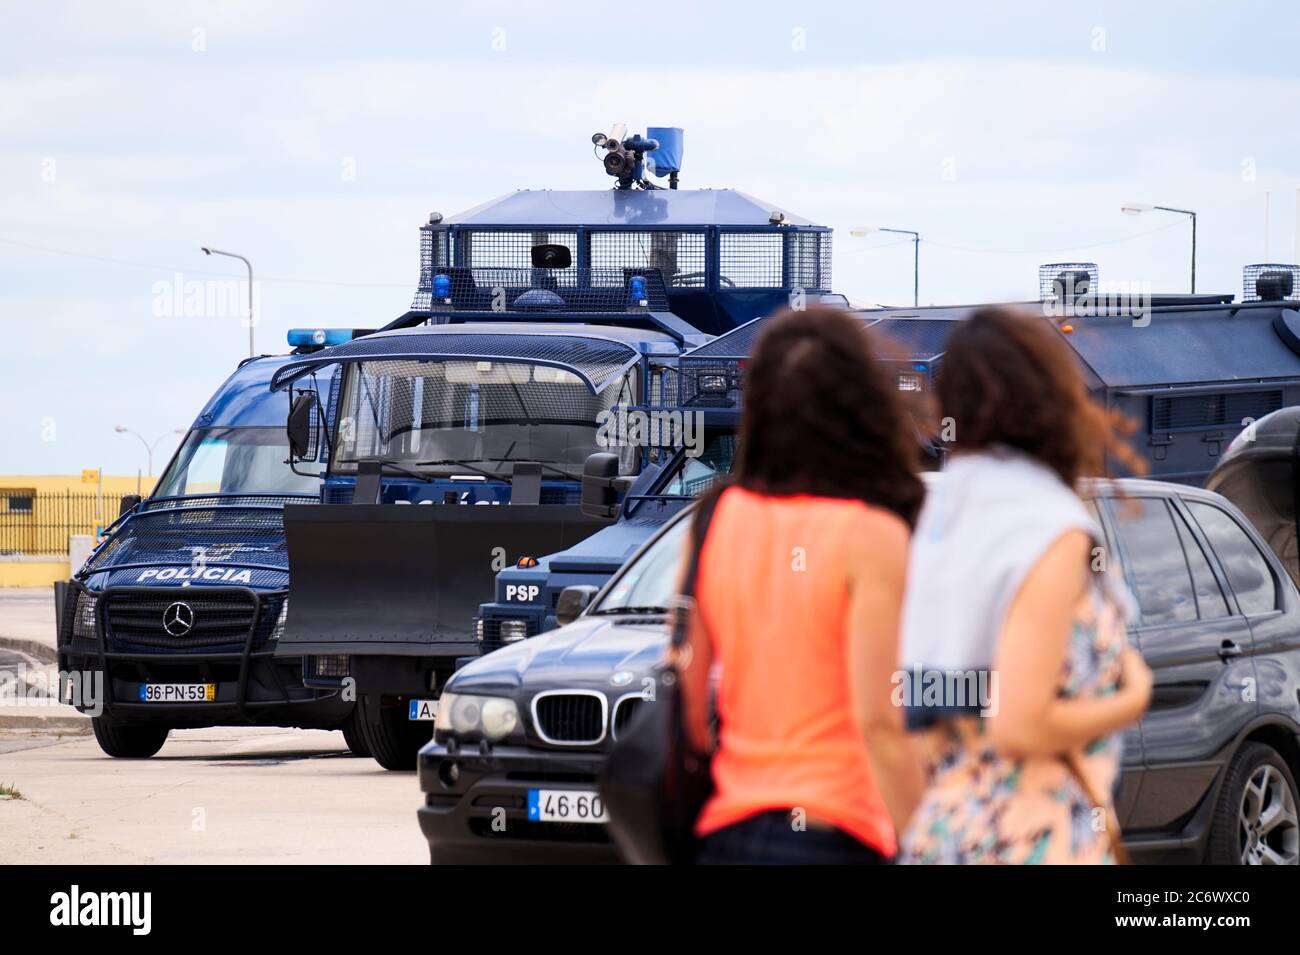 La polizia controlla i veicoli e 2 donne che li guardano a Lisbona, in Portogallo Foto Stock